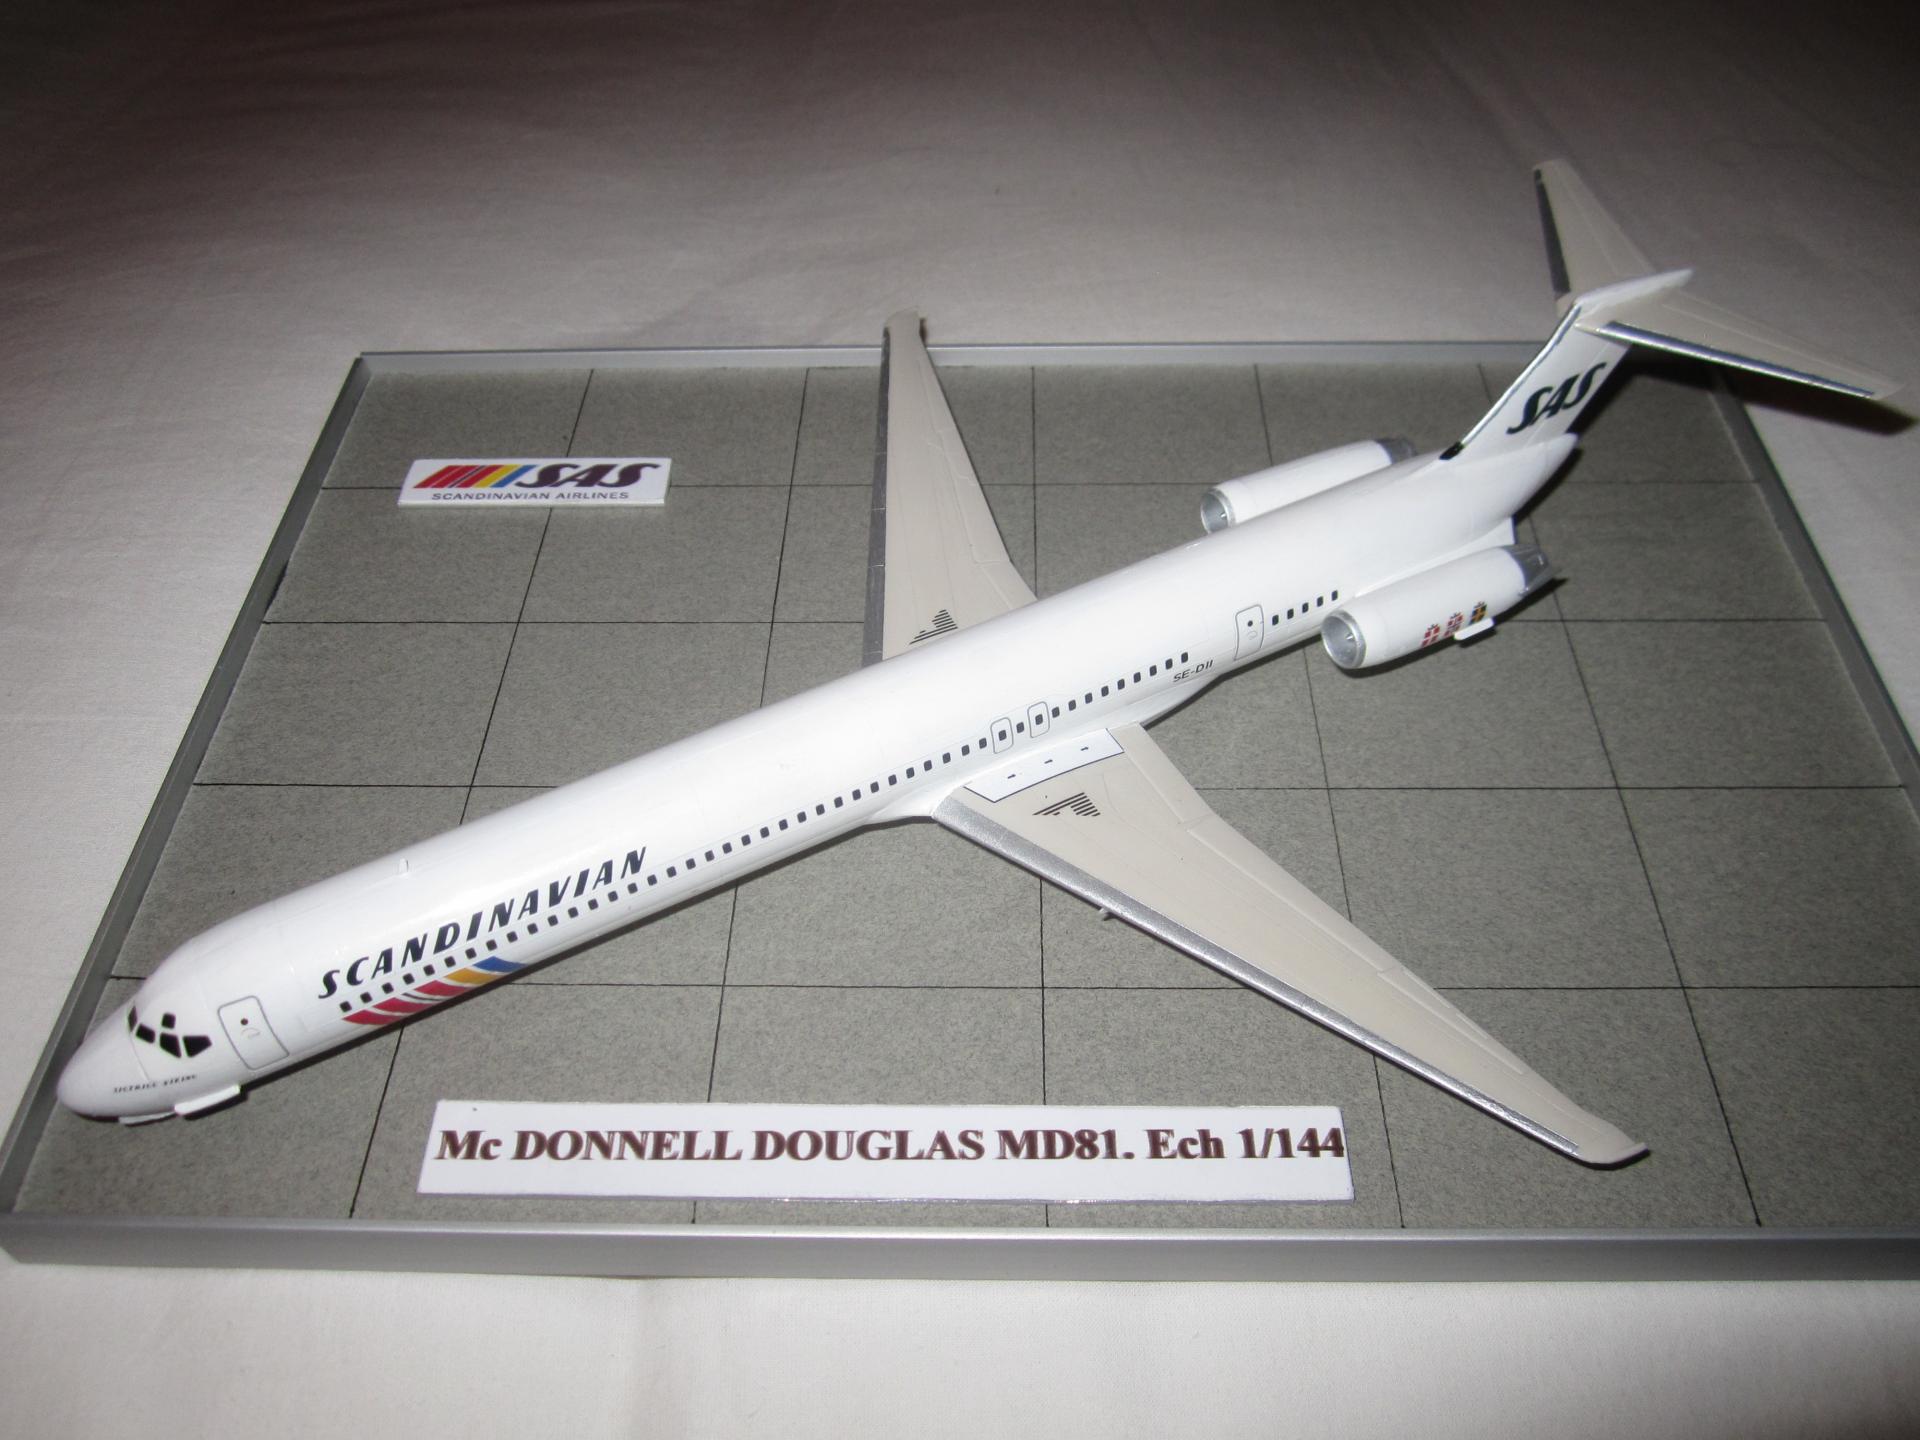 Mc DONNELL DOUGLAS MD 81